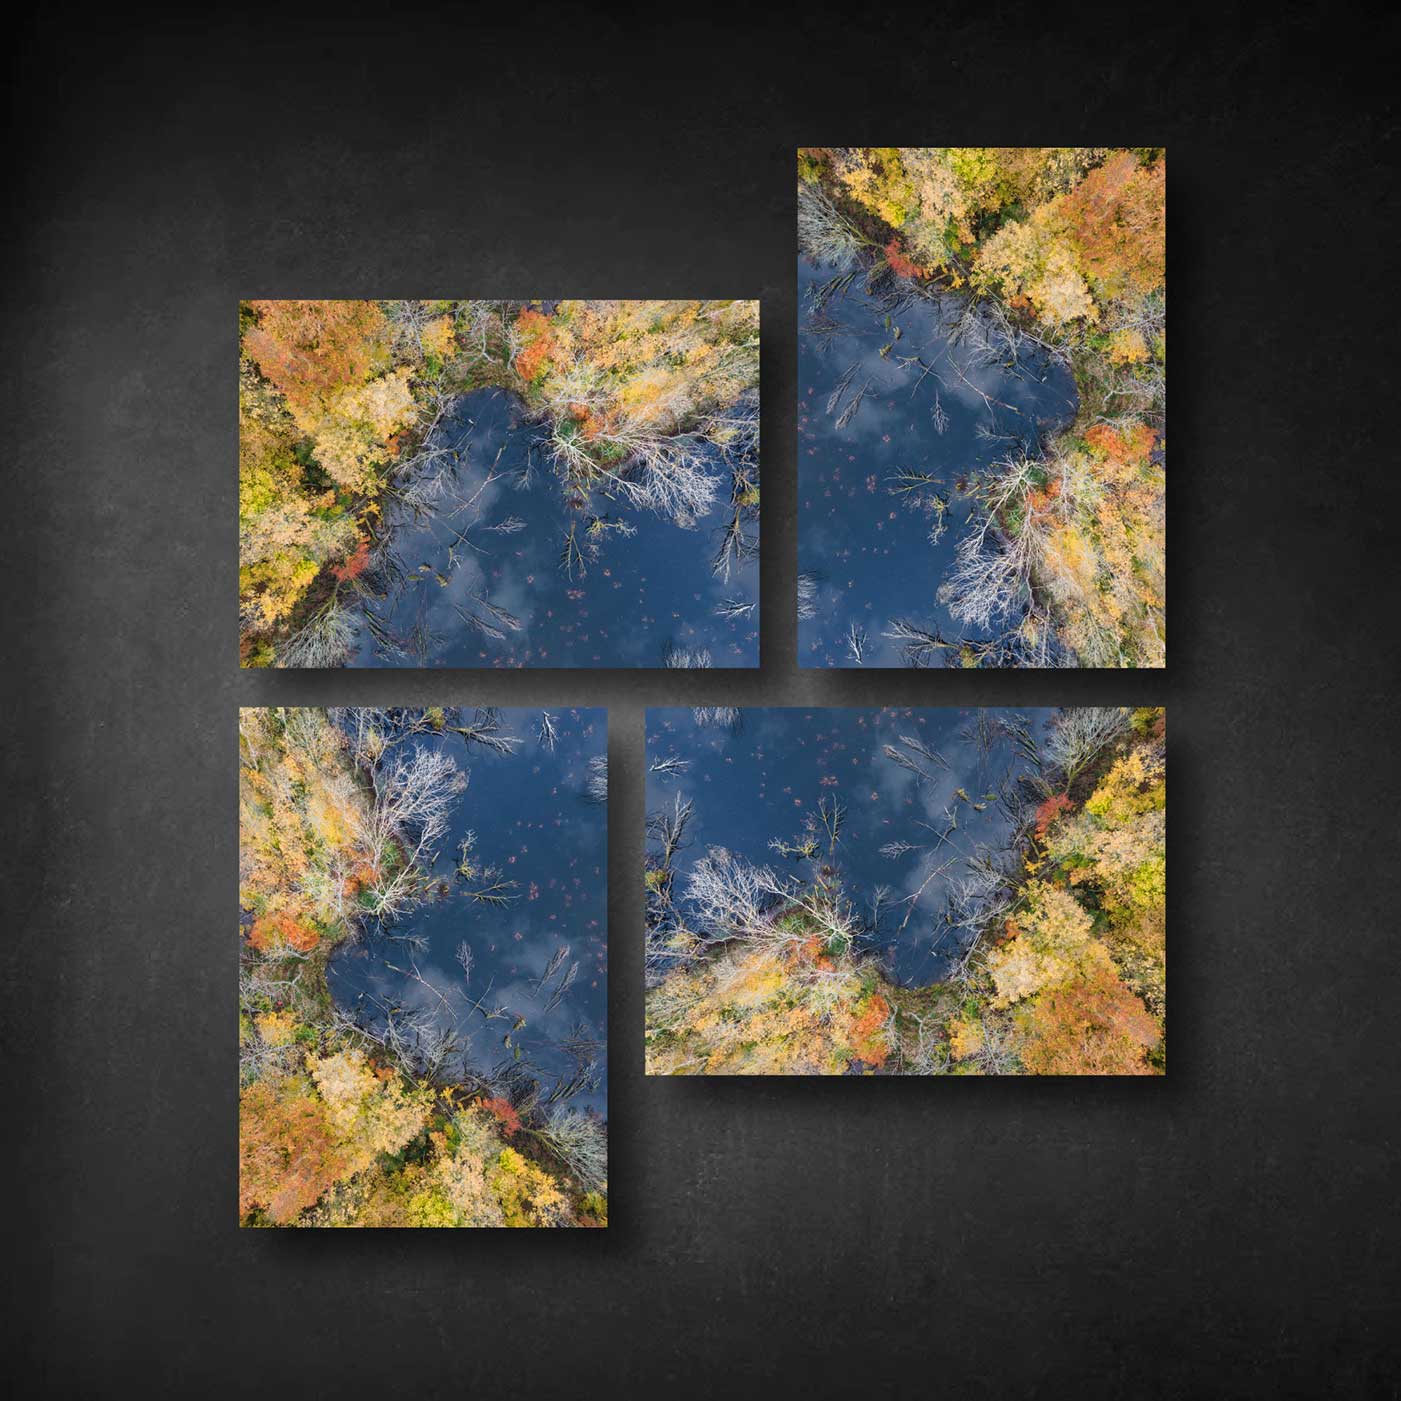 billedvæg med luftfotos af en søbred i blå og orange